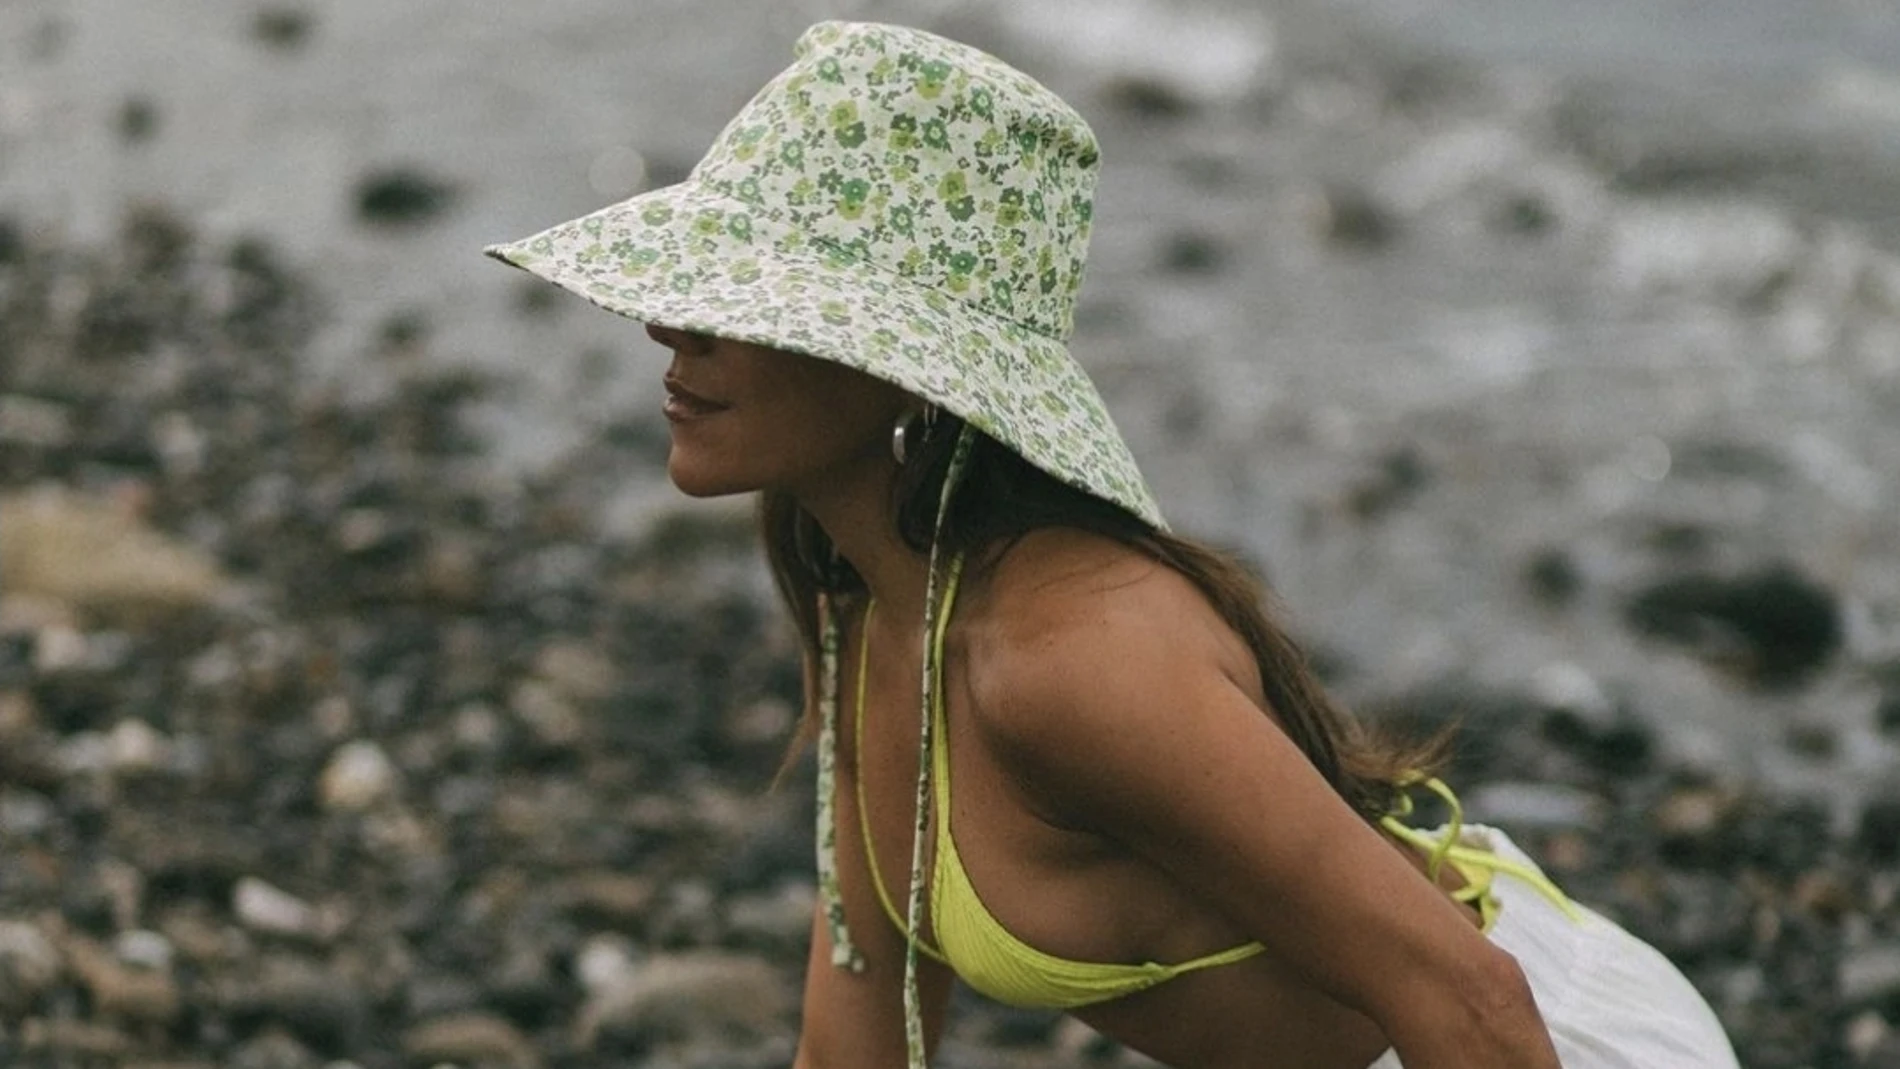 Paula Ordovás con bikini verde de My peep toes. Instagram @paulaordovas